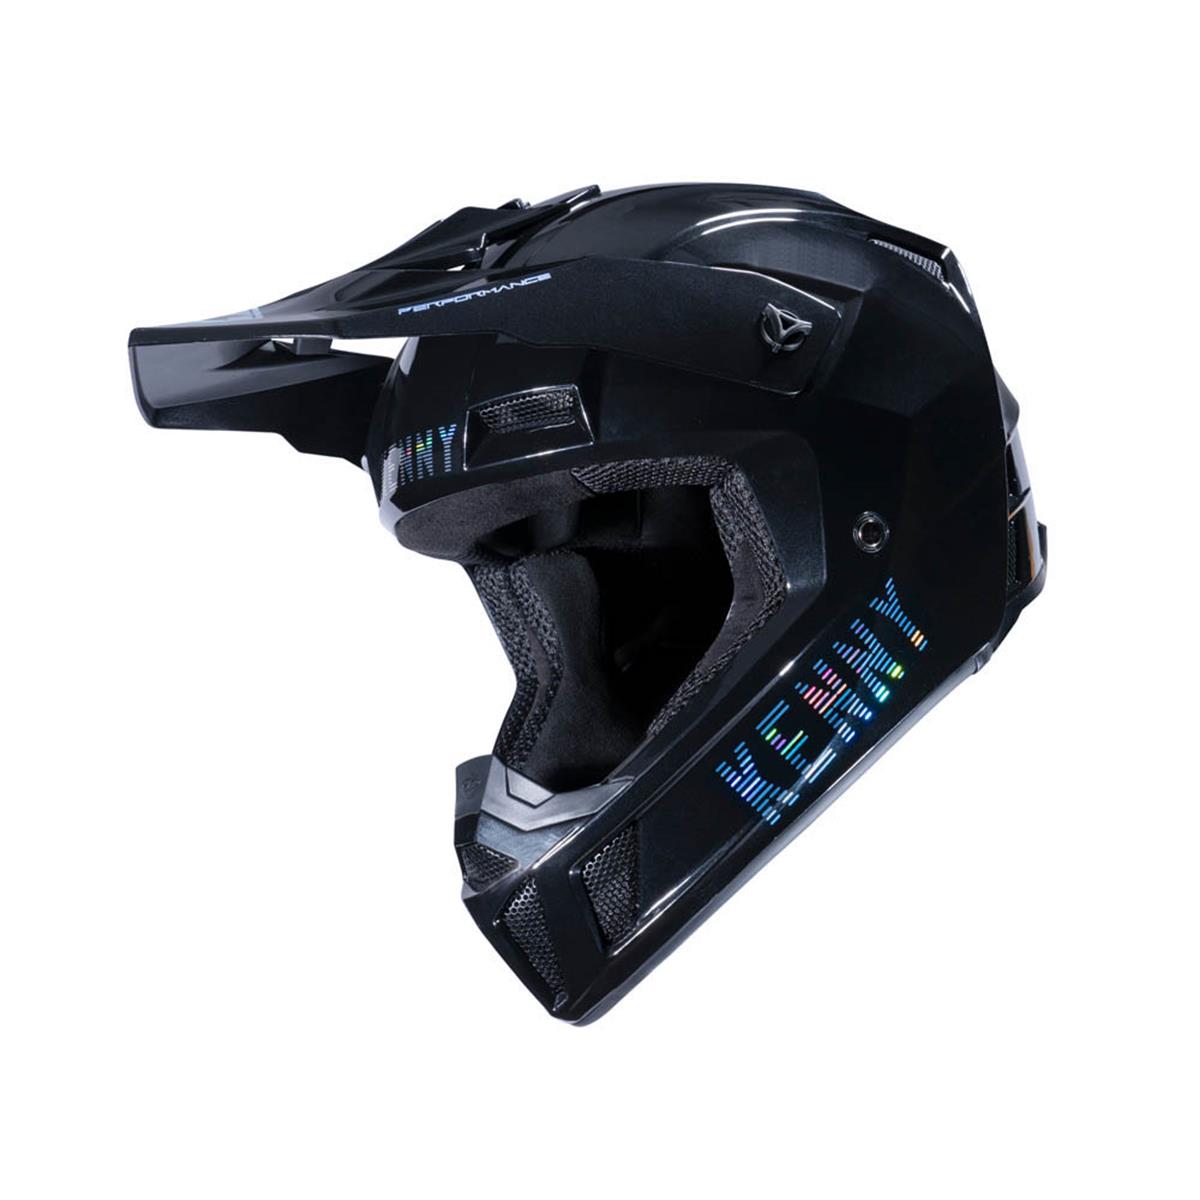 Ontwijken Knorrig Beschuldigingen Kenny MX Helmet Performance Solid - Black | Maciag Offroad